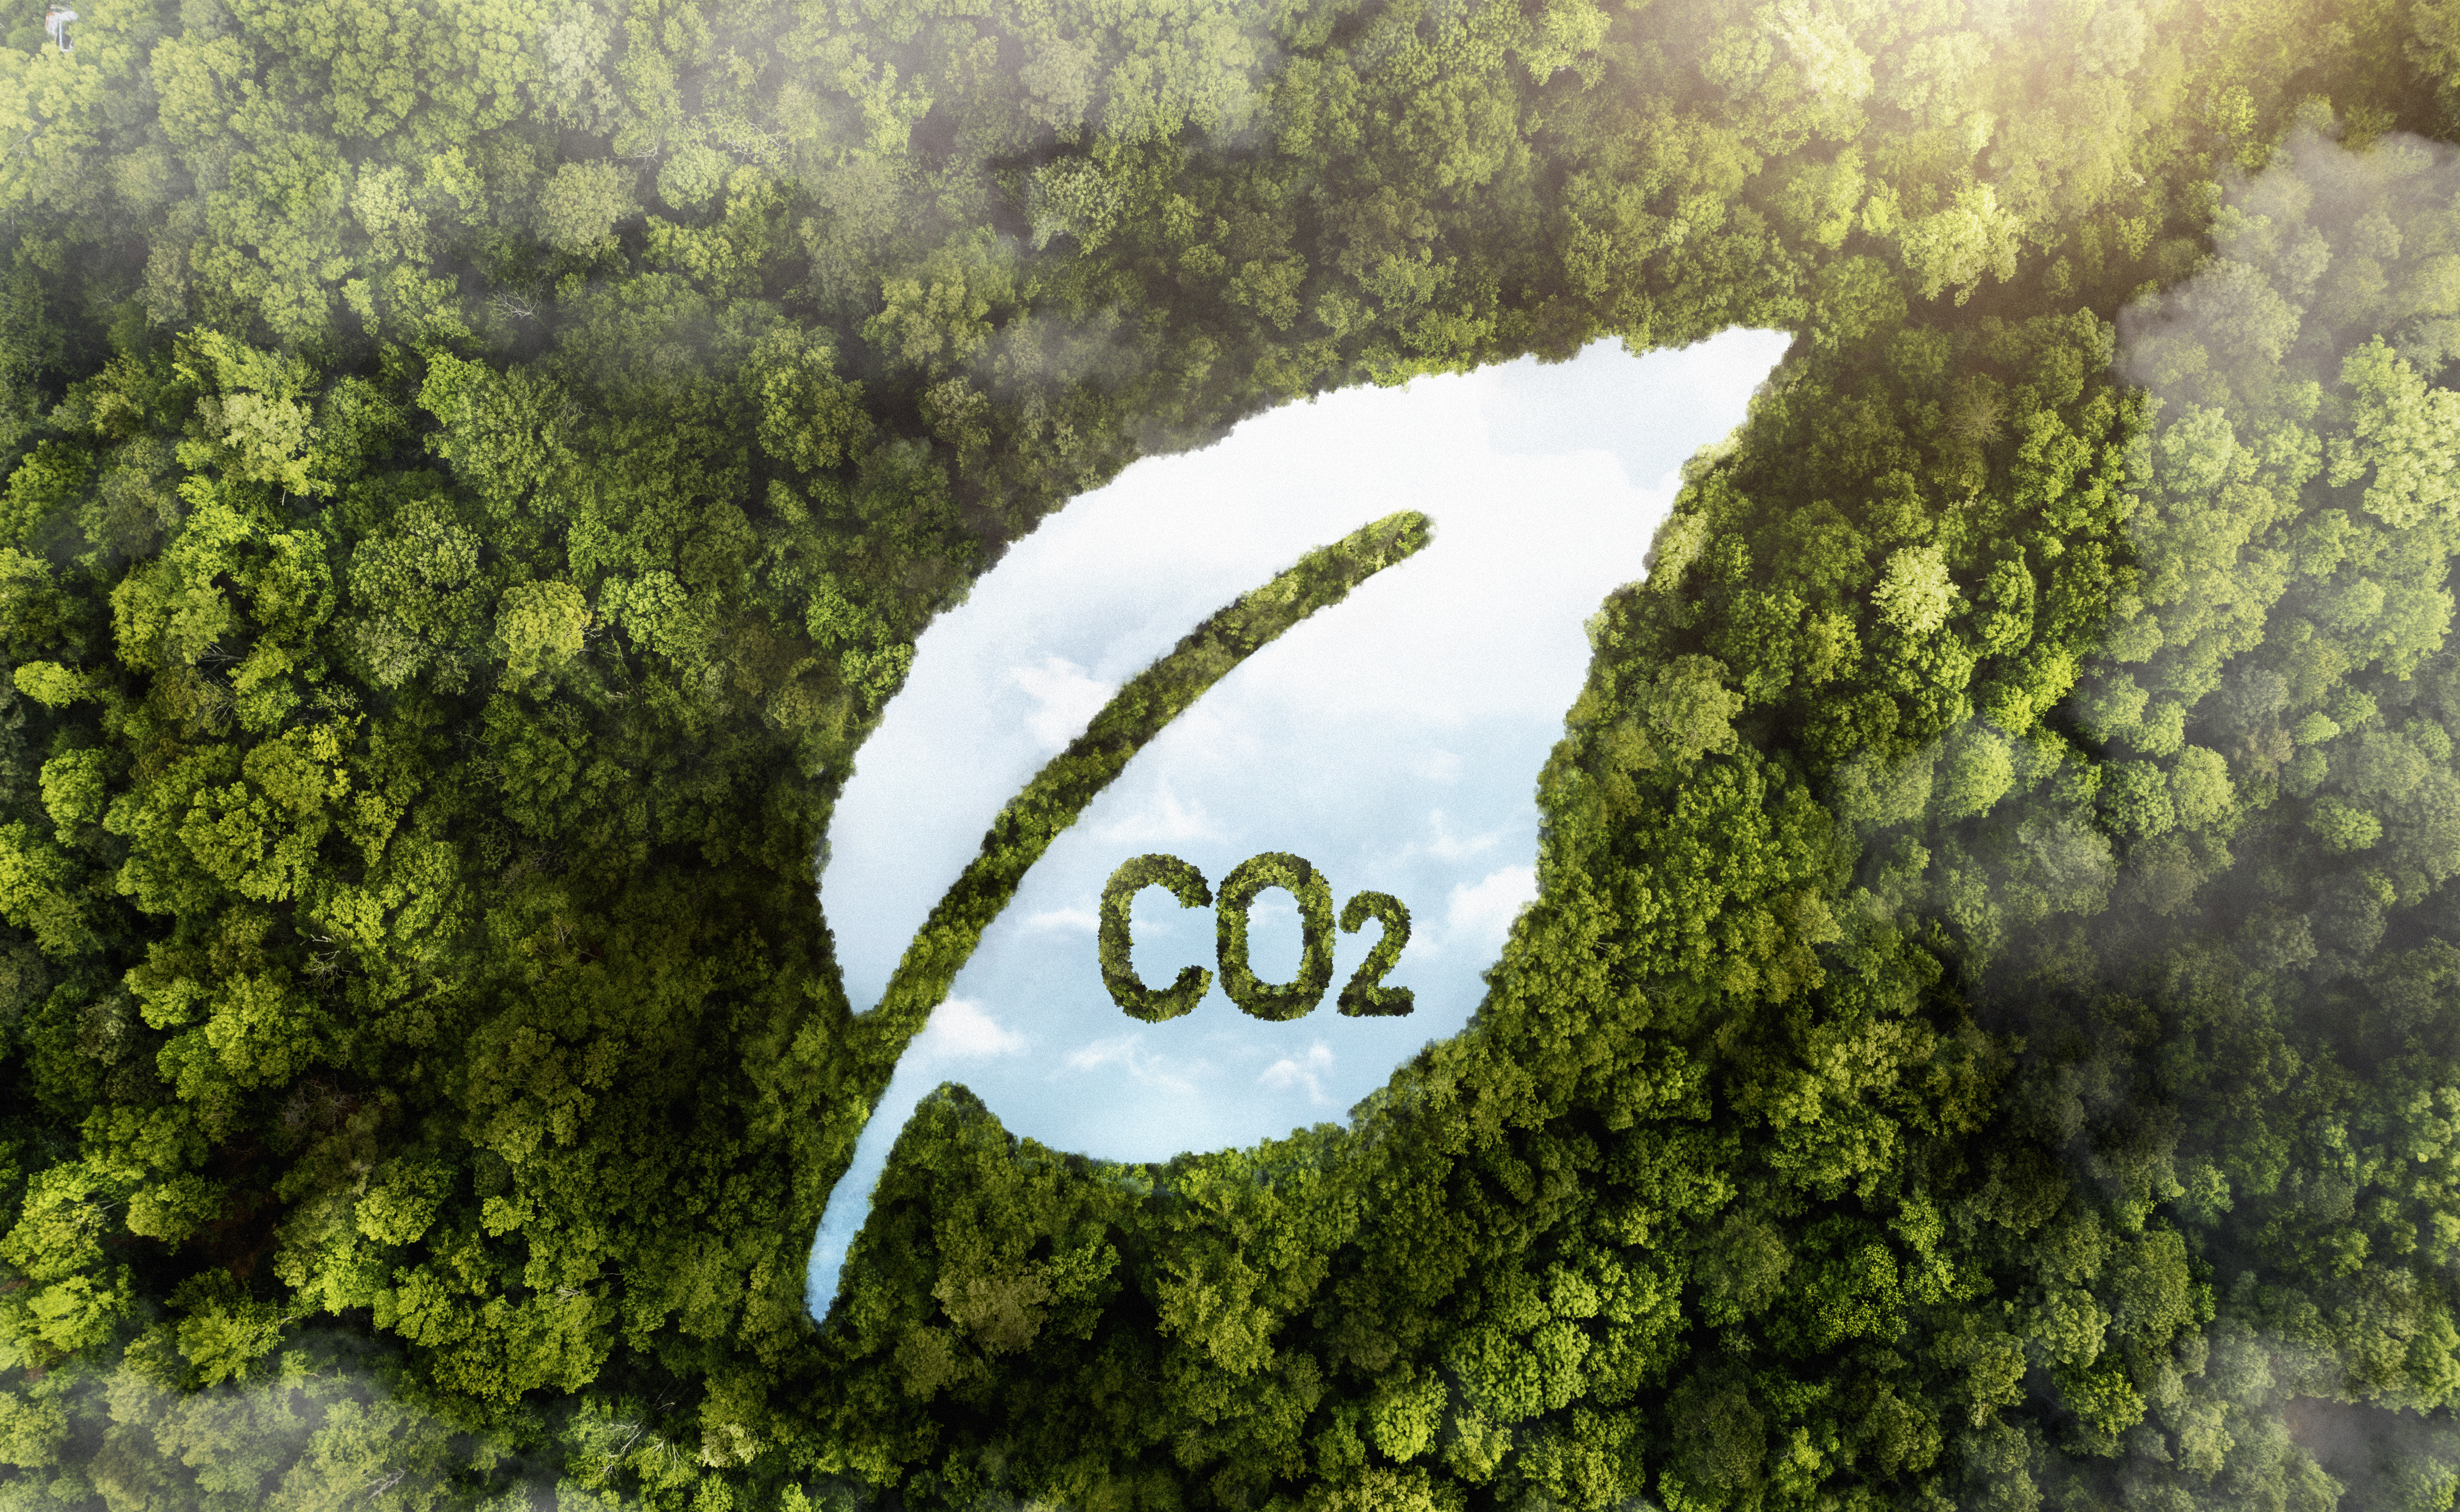 CO2 emissions